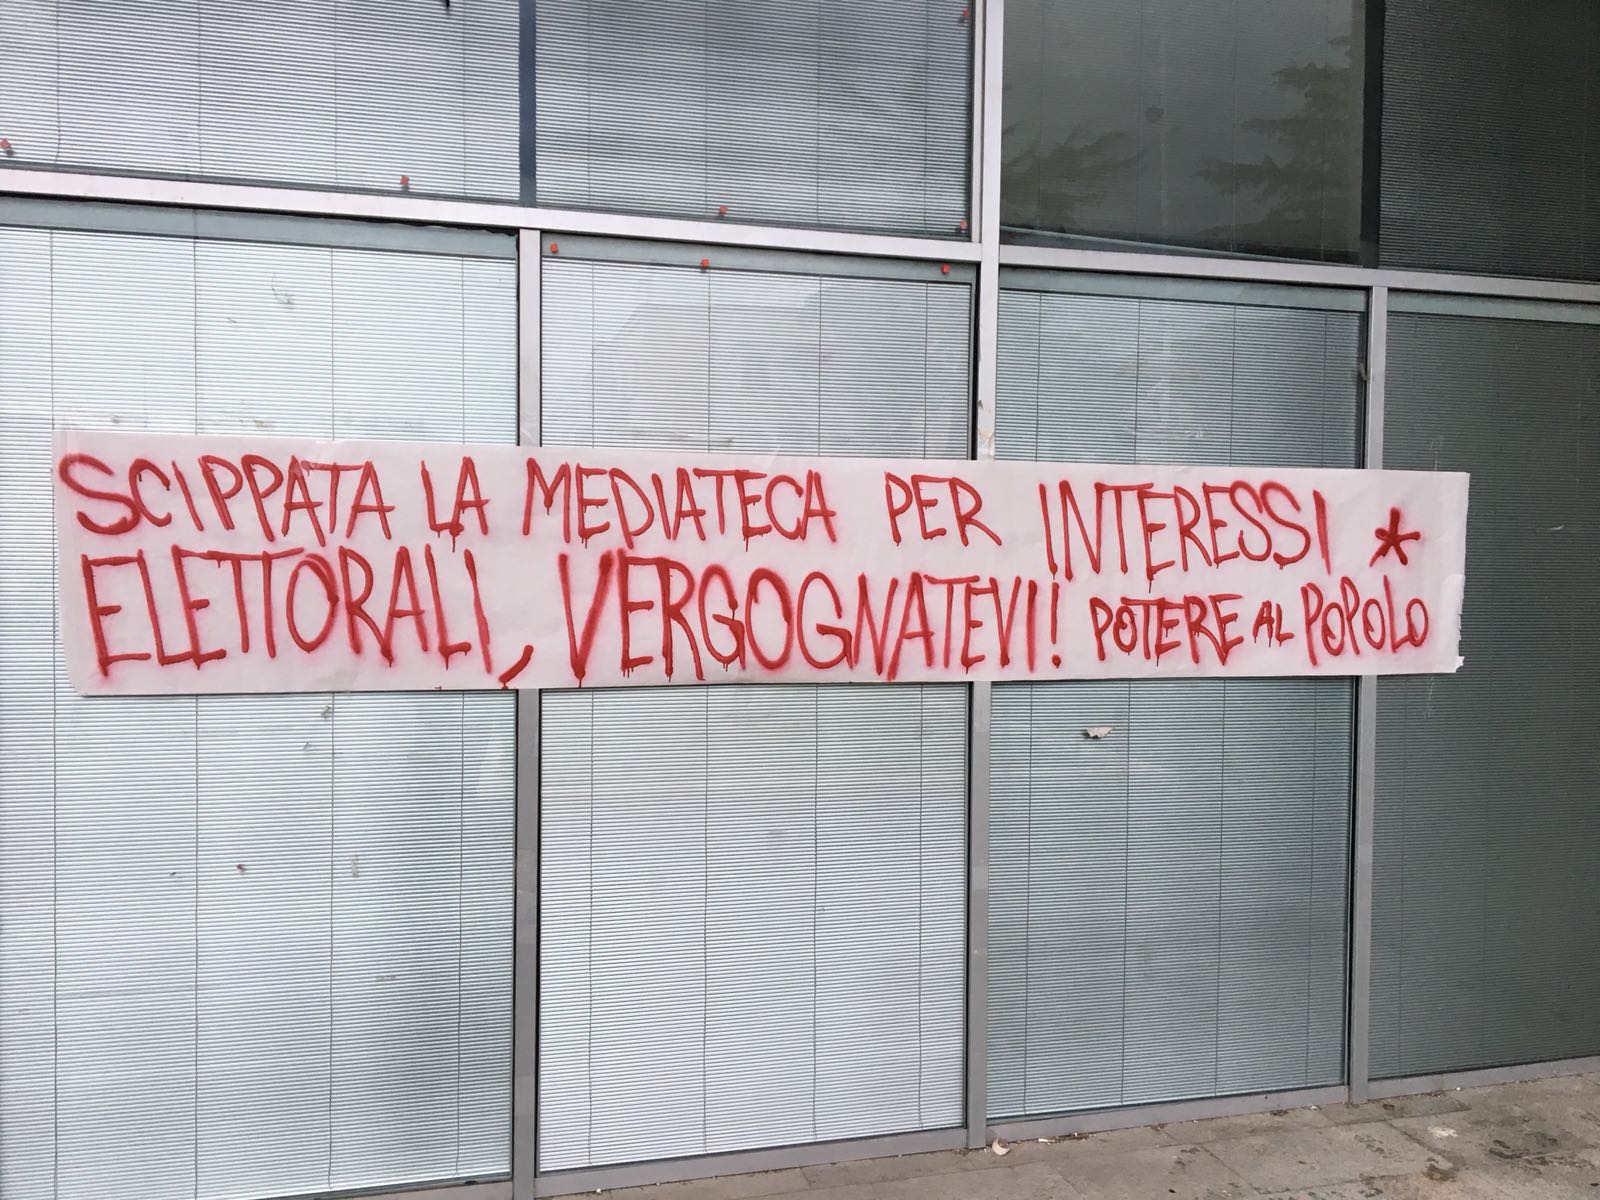 Benevento| Mediateca, affissi manifesti di “Potere al Popolo”